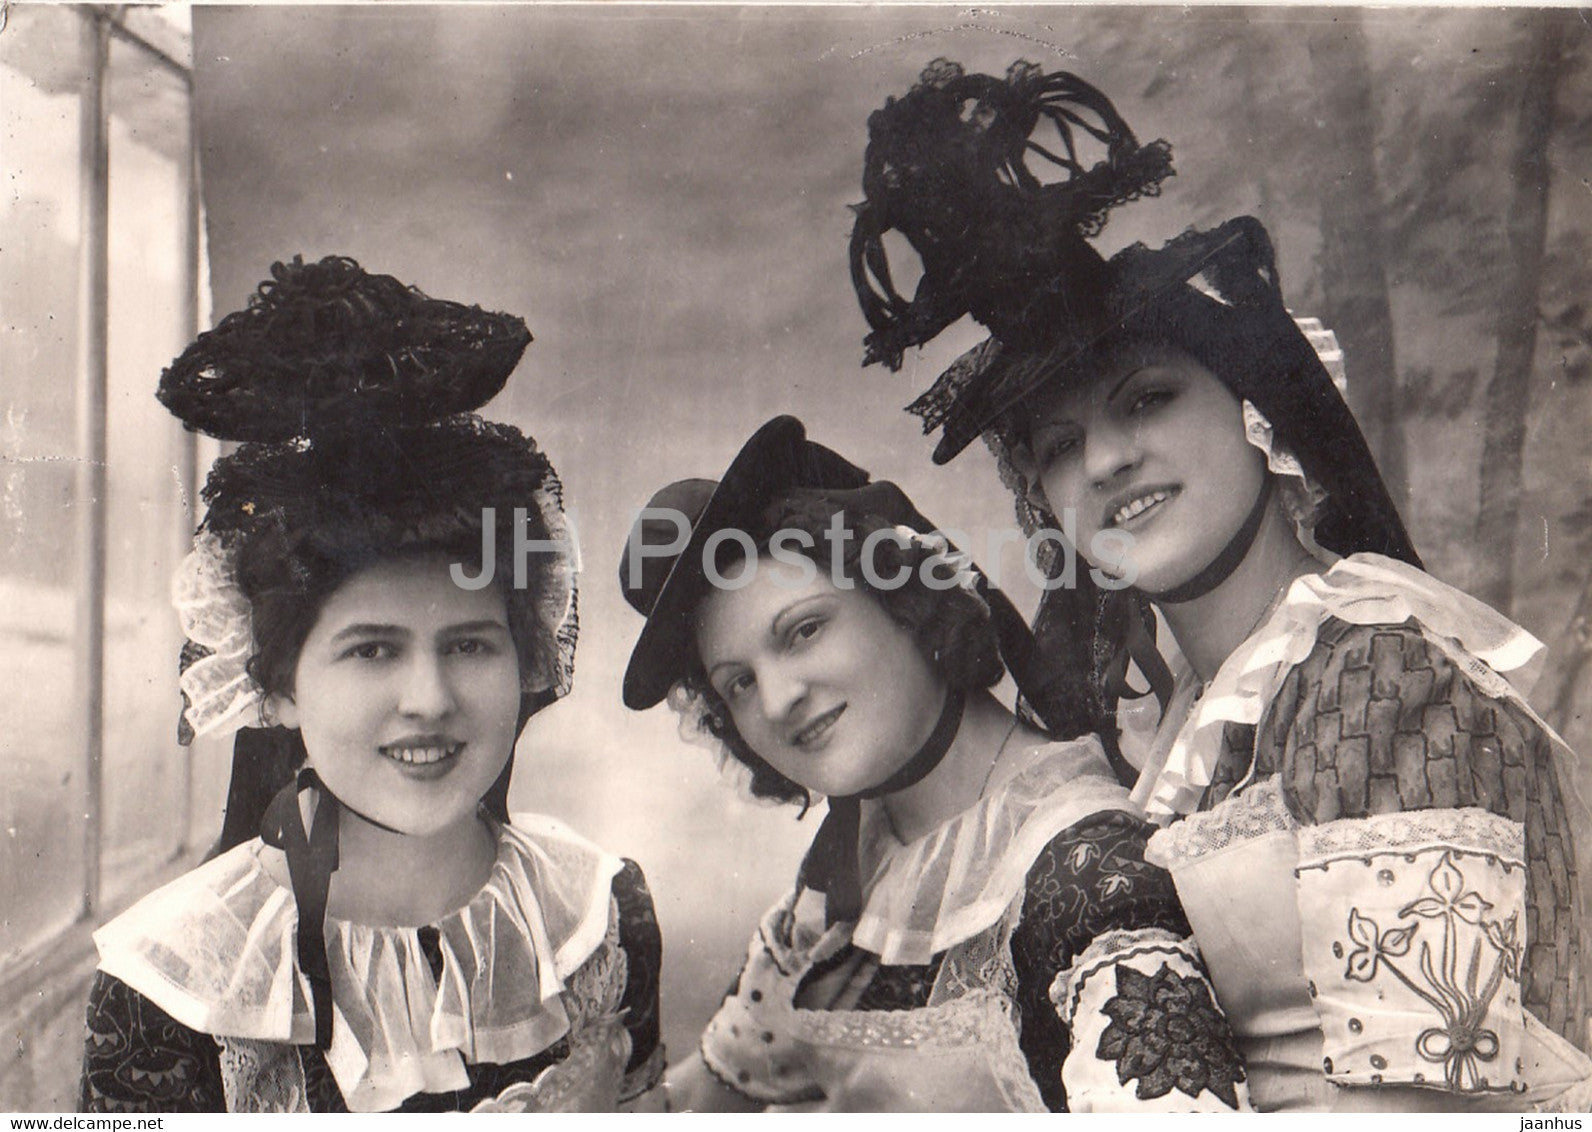 Maconnaises - Brelot Cocardiau - folk costumes - old postcard - France - unused - JH Postcards